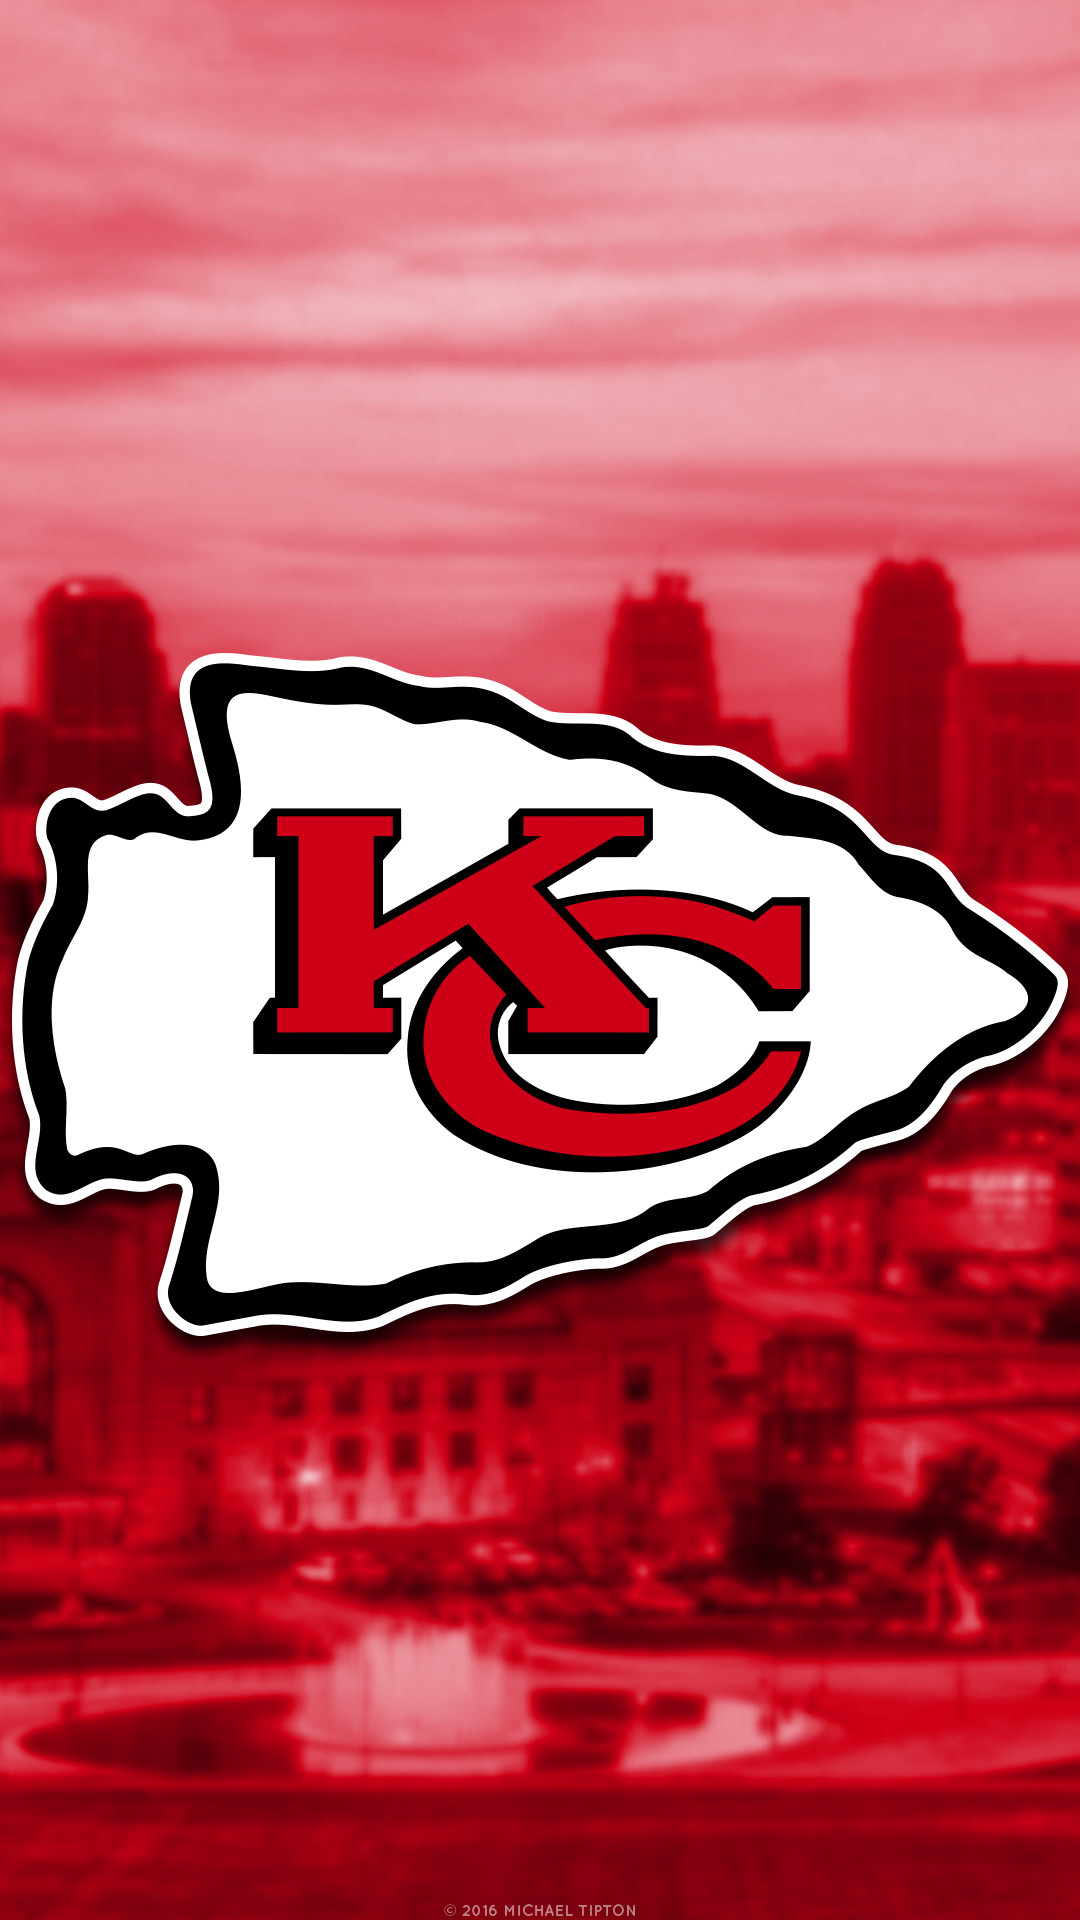 1080x1920 NFL - Kansas City Chiefs - 2 iPhone 6 Wallpaper